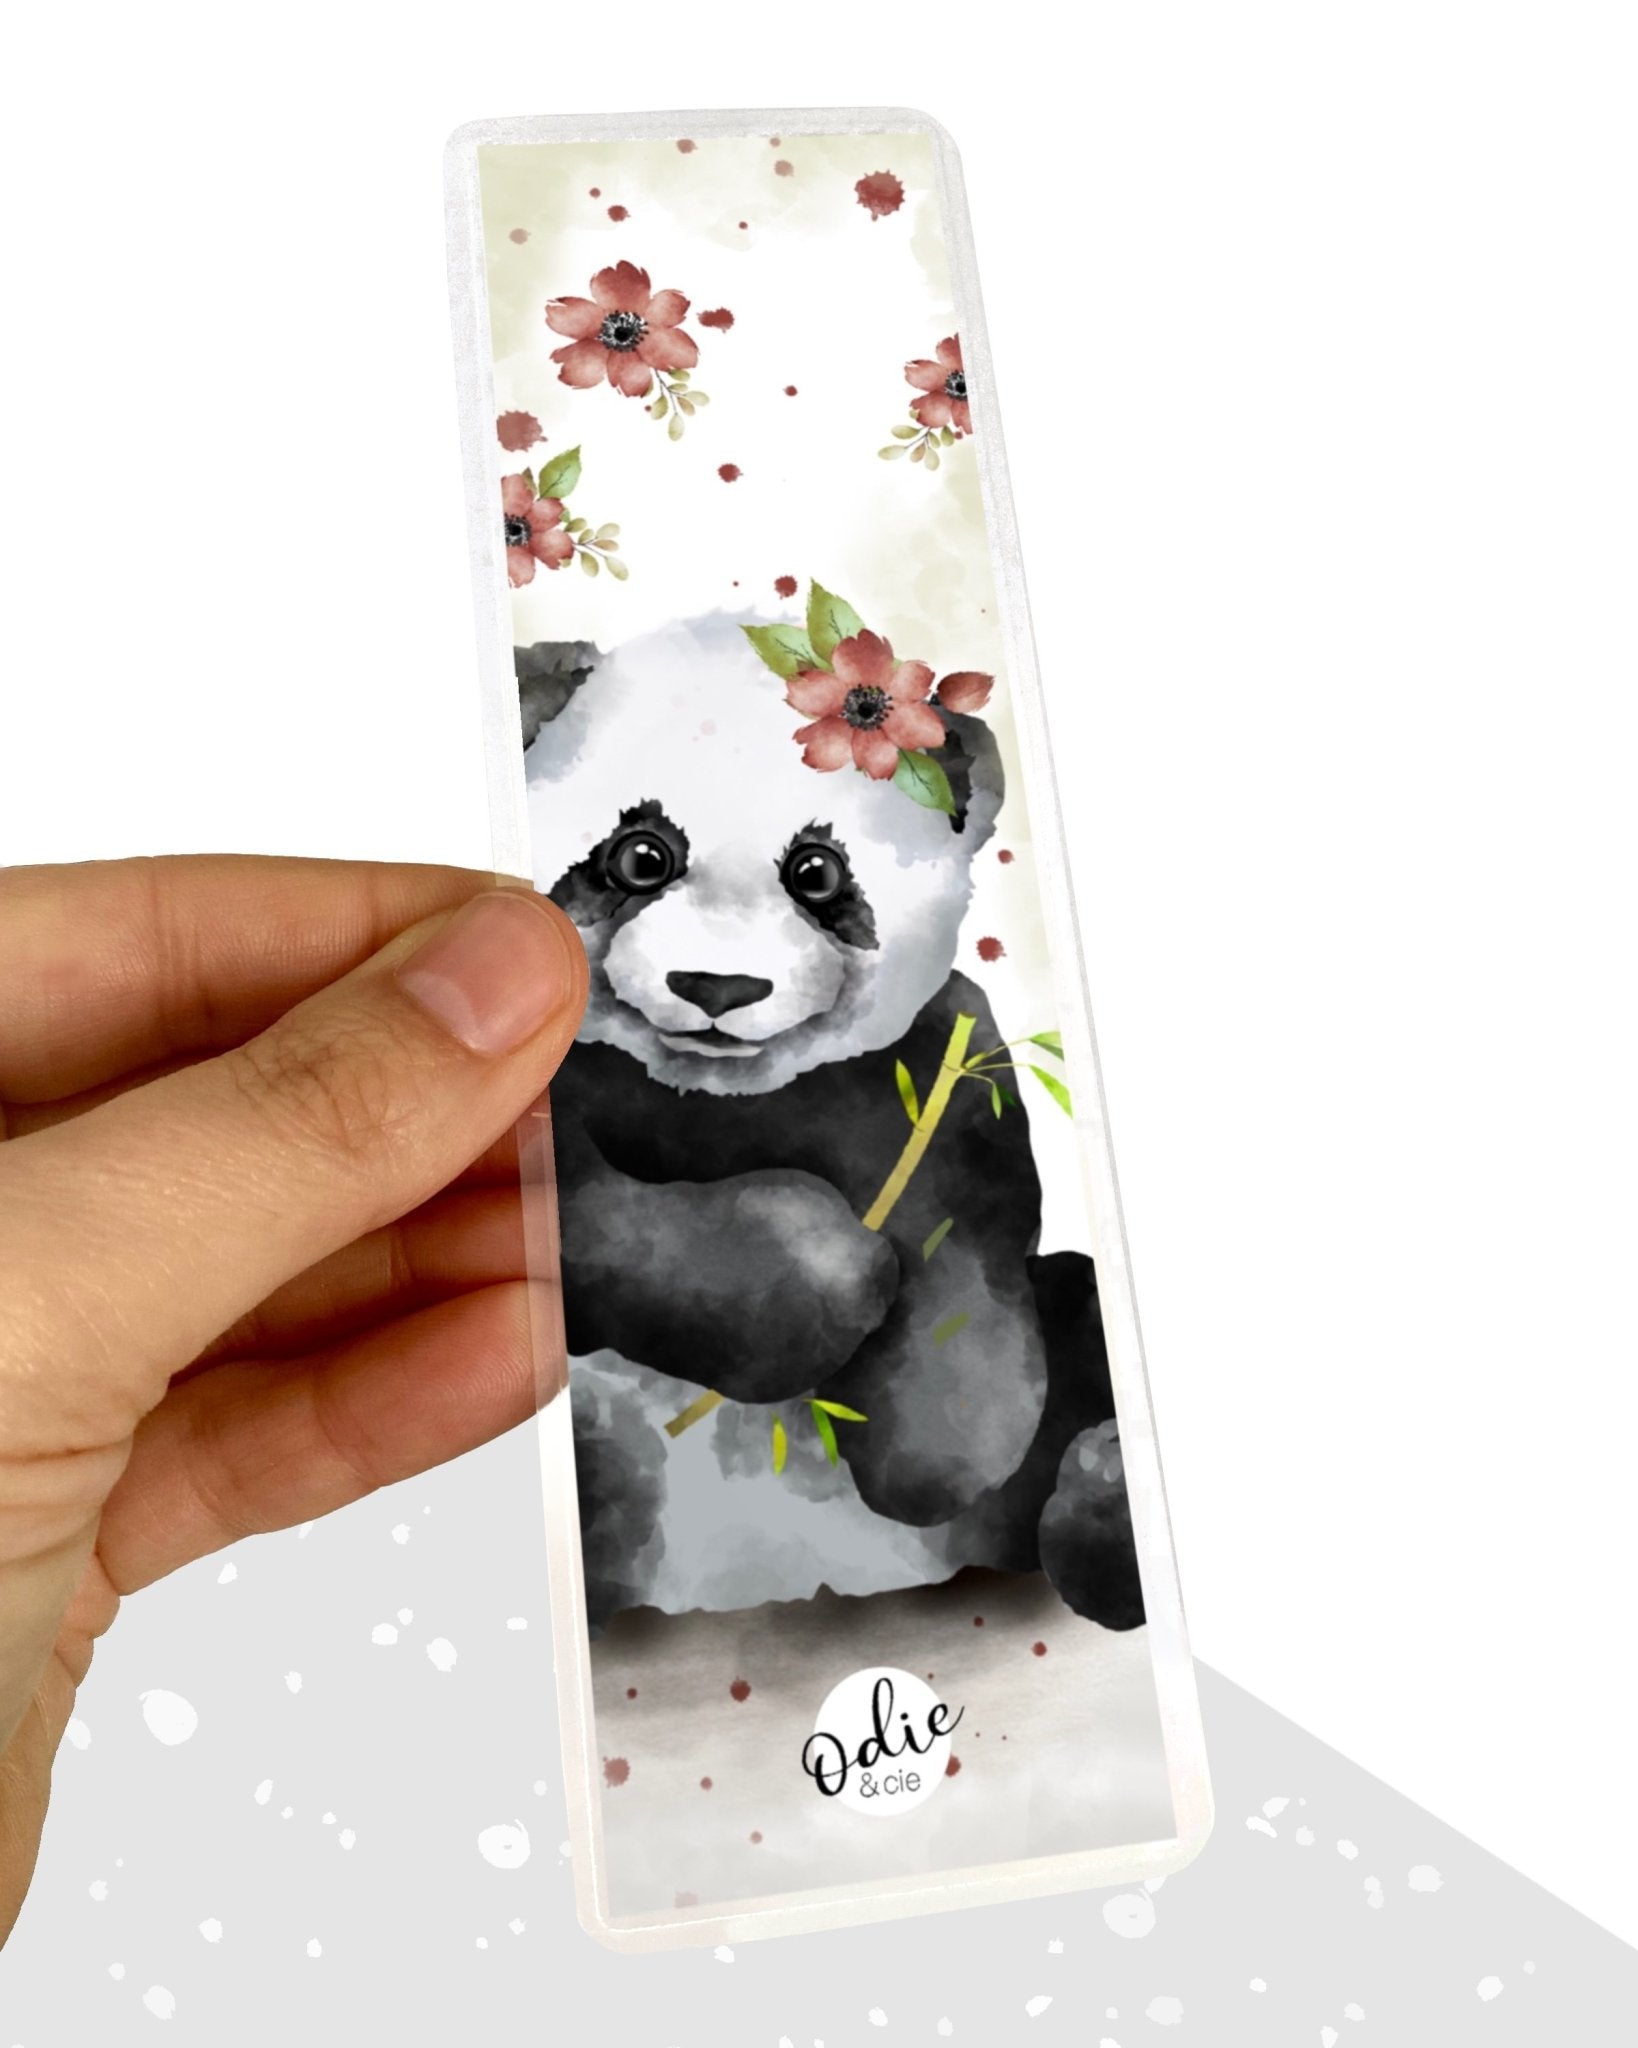 Signet - Panda adulte avec de petites fleurs - Signet - Créations Odie